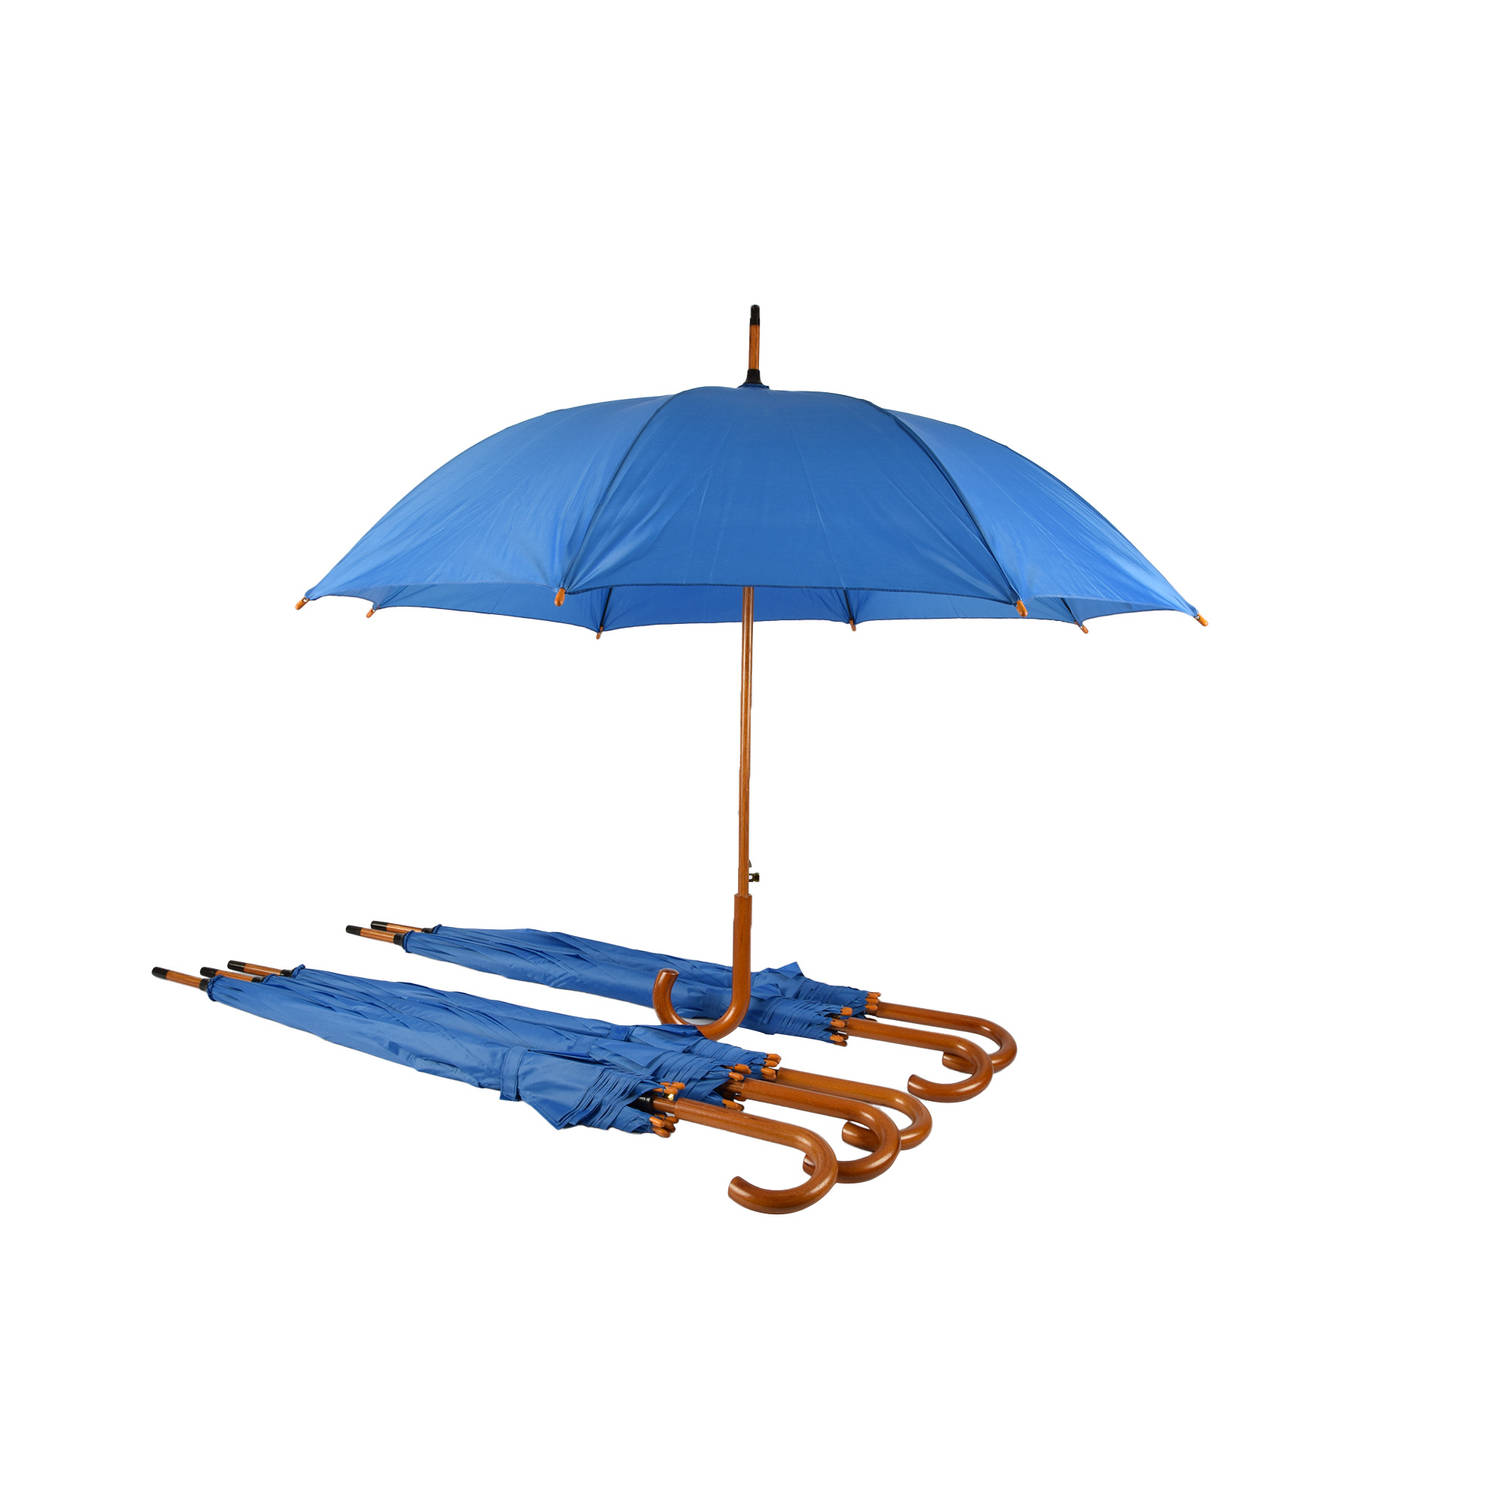 Set van 6 Automatische Volwassen Paraplu's - 102 cm Diameter - Blauw | Houten Look Handvat | Windproof